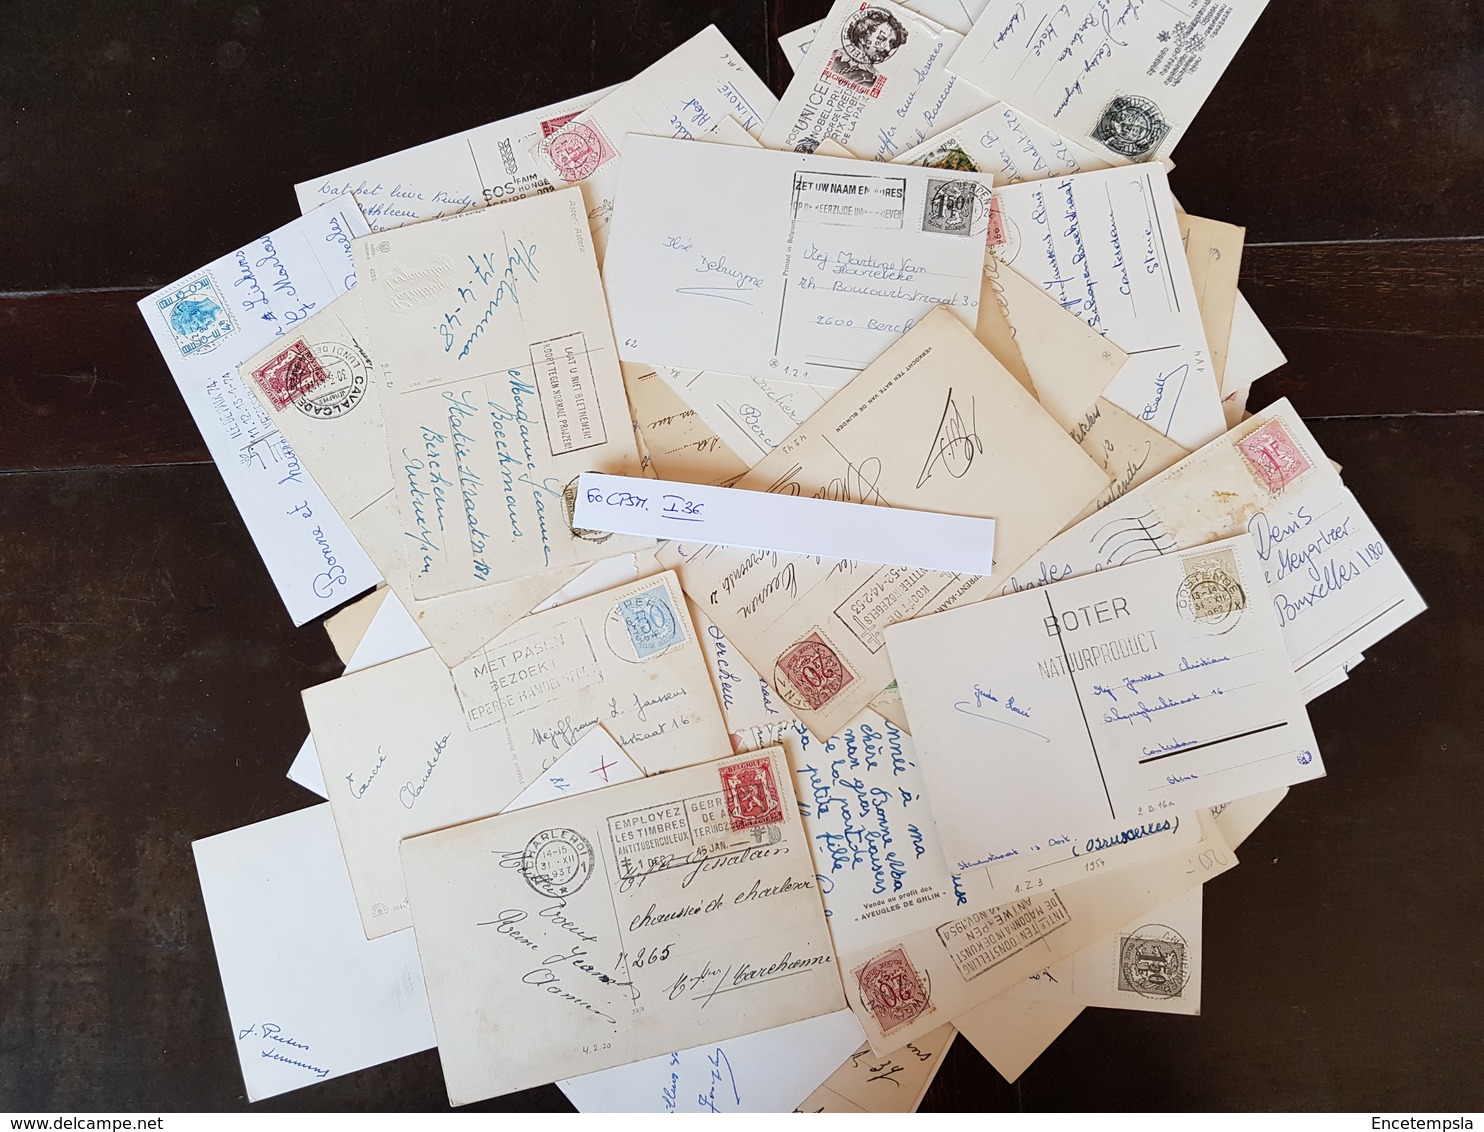 CPSM - Carte postale - Lot de 60 cartes postales - Fantaisies - Bonne Année et Autre ( Lot I36 )